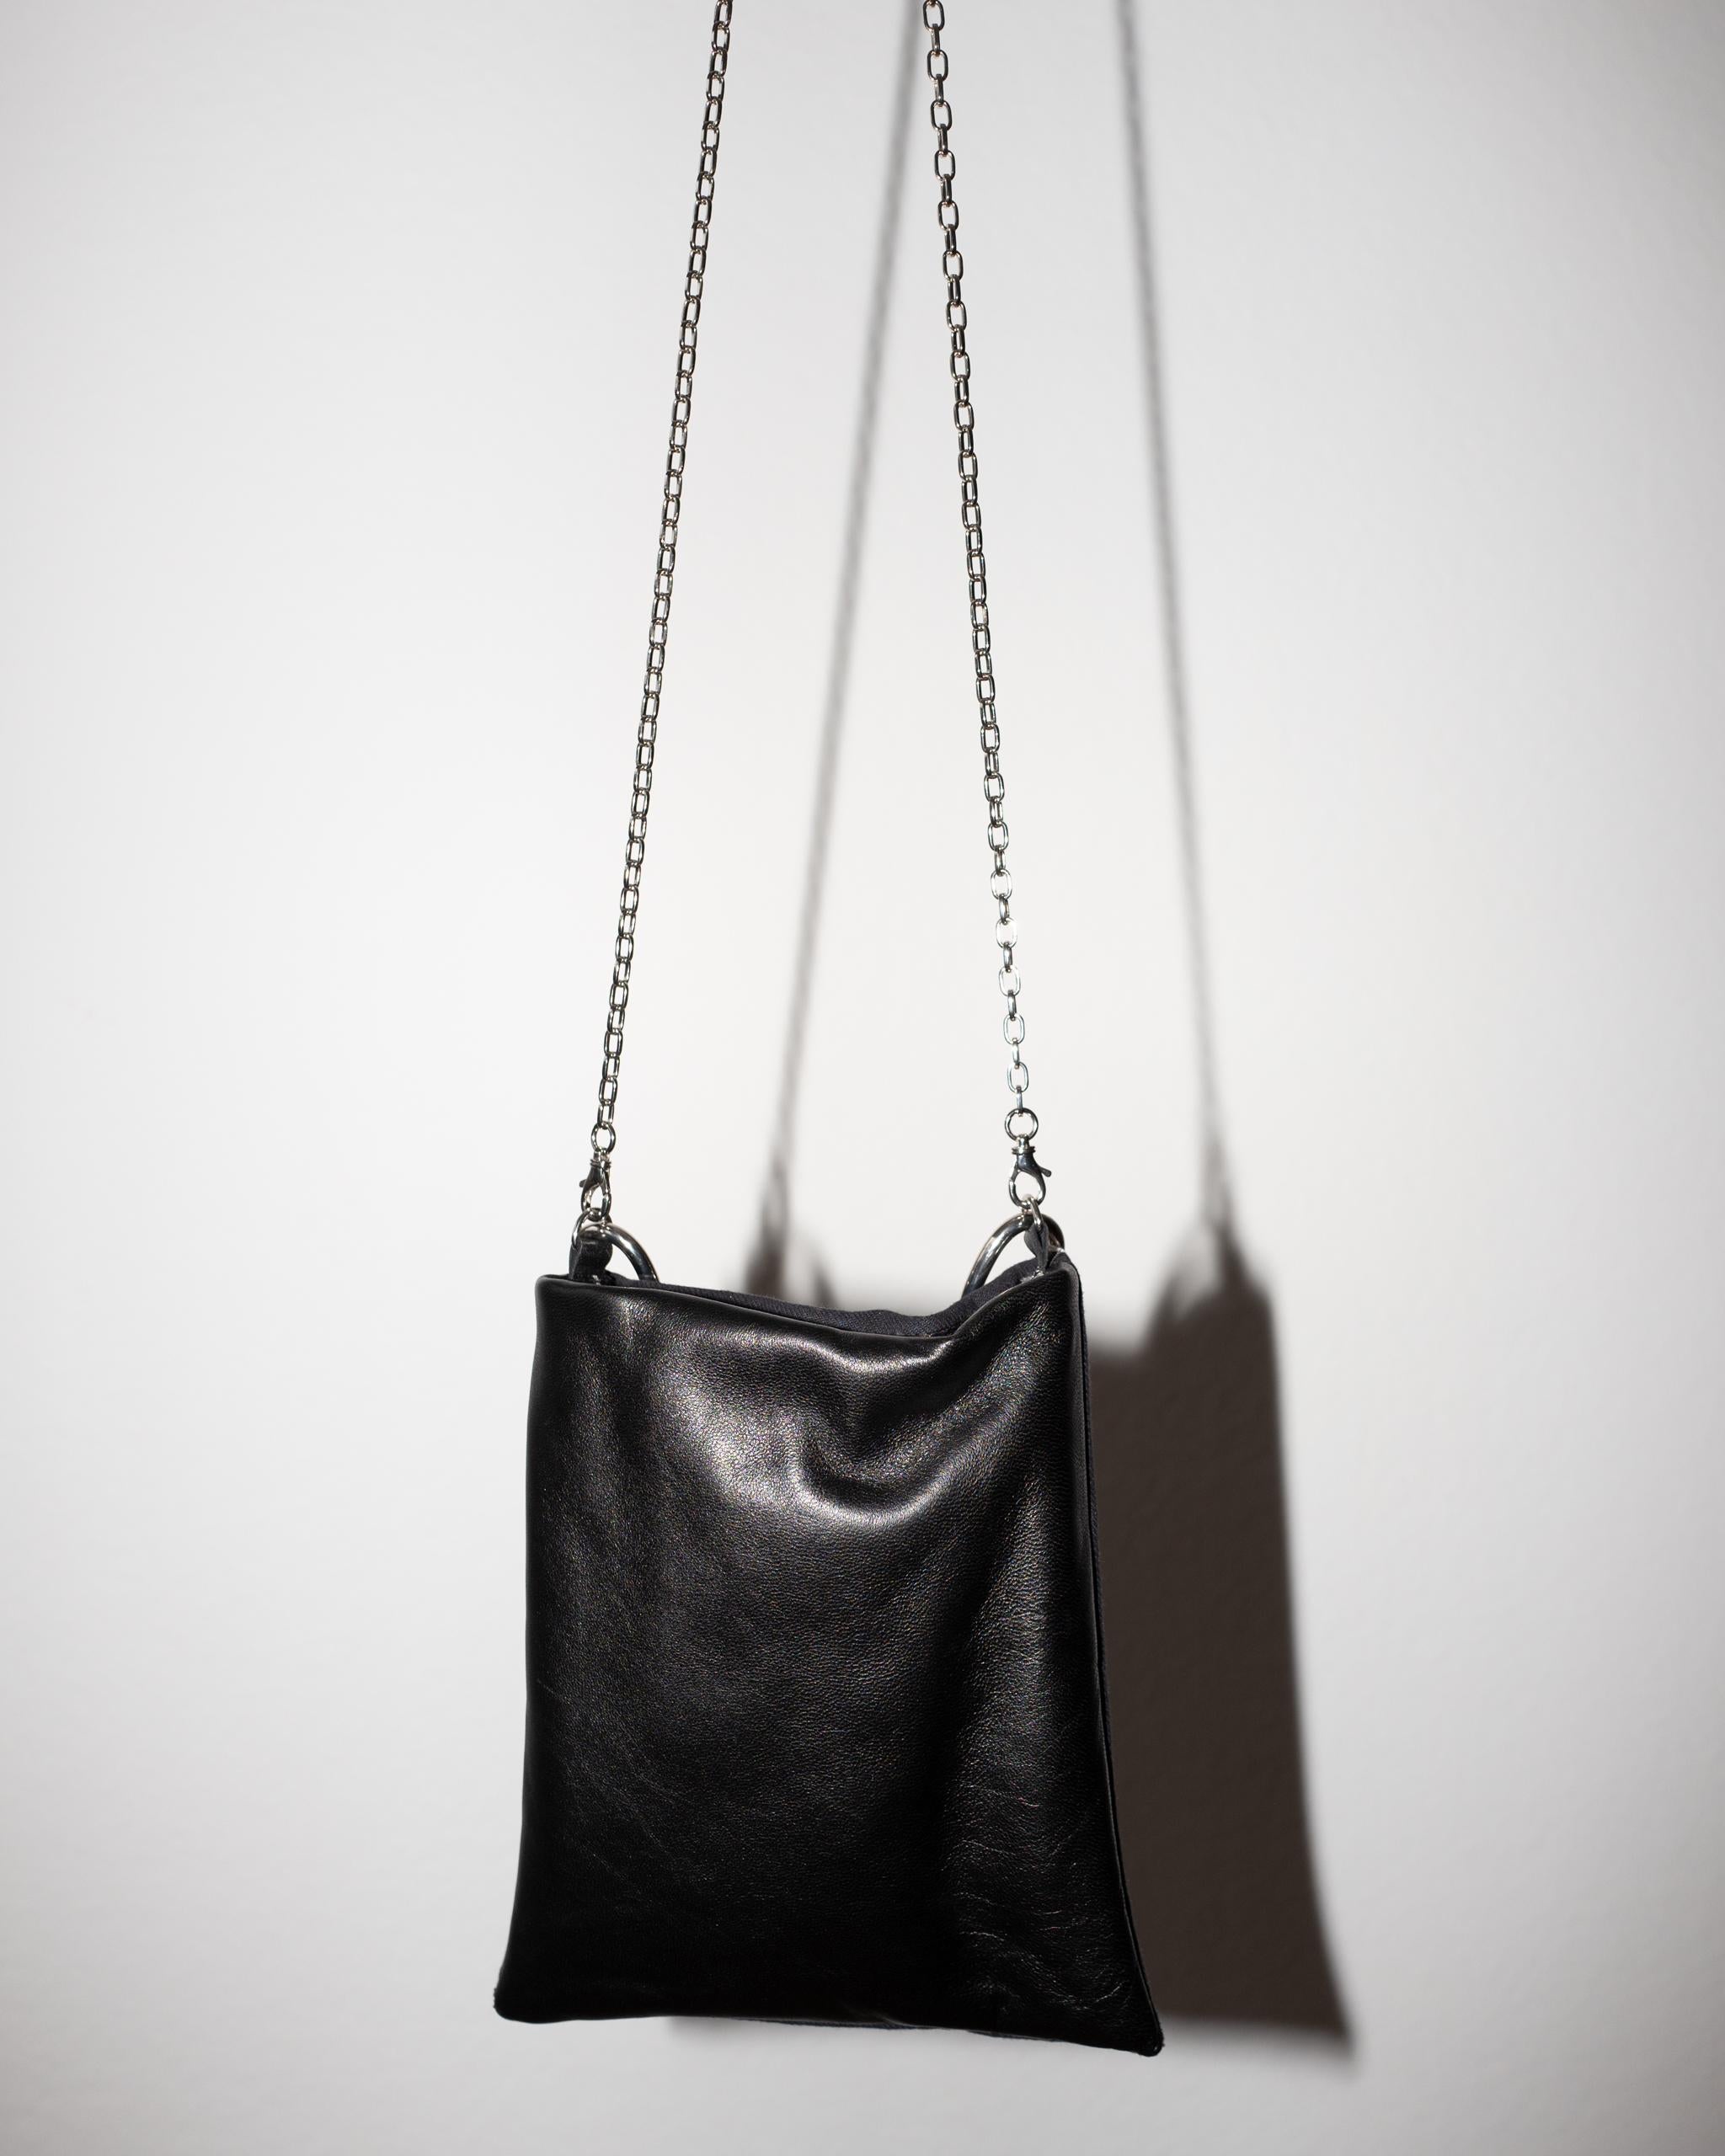 Crystal Embellished Blue Evening Shoulder Bag Black Leather Chunky Chain For Sale 5